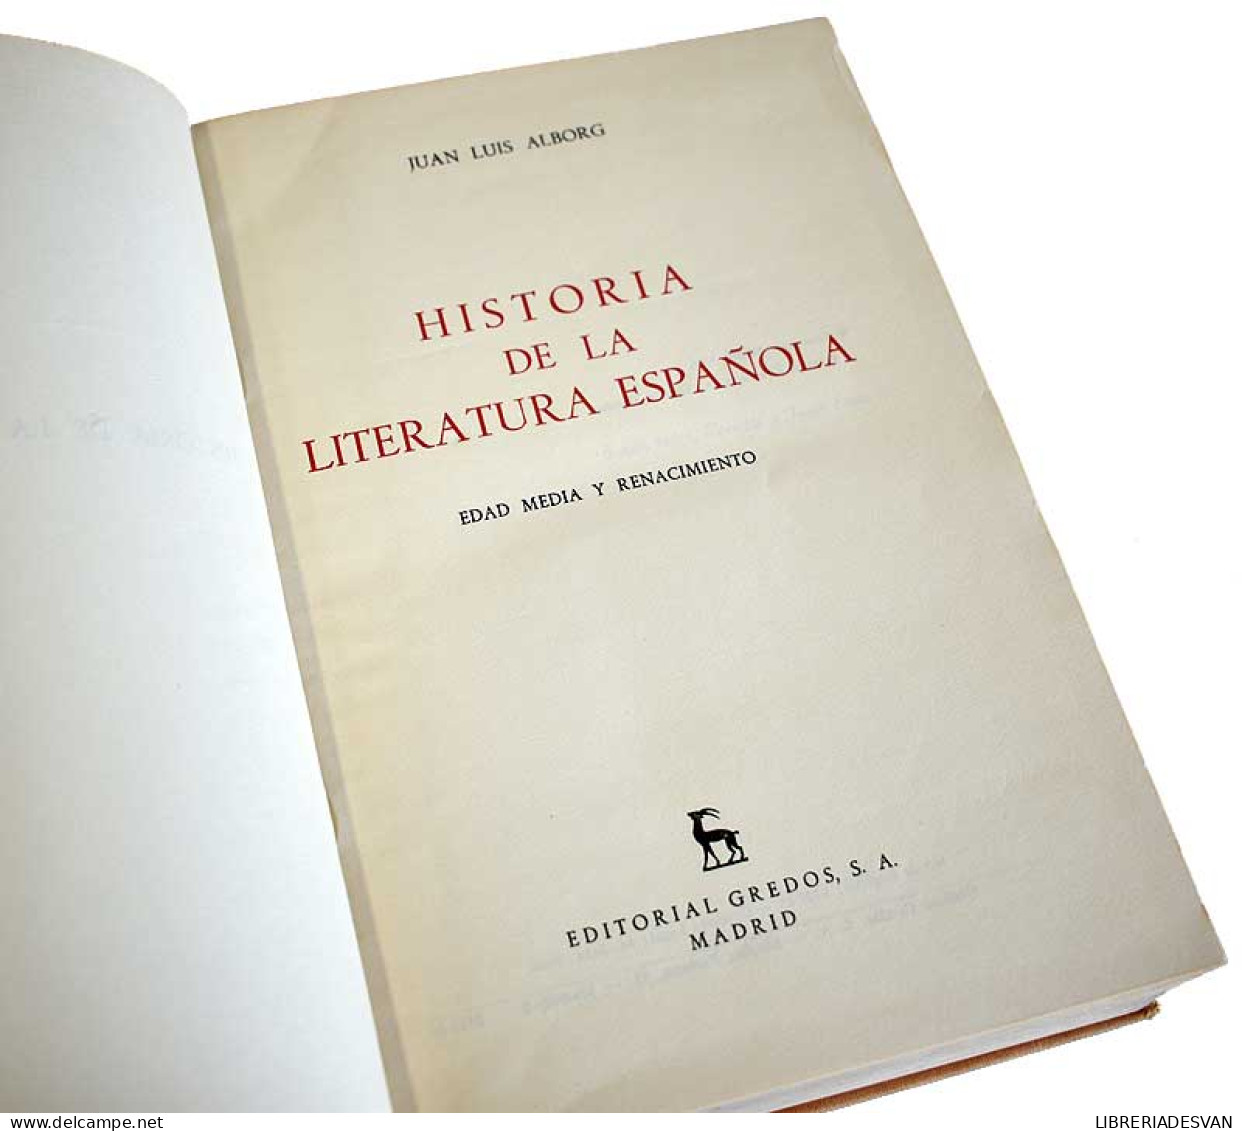 Historia De La Literatura Española. Tomo I. Edad Media Y Renacimiento - Juan Luis Alborg - Philosophy & Psychologie